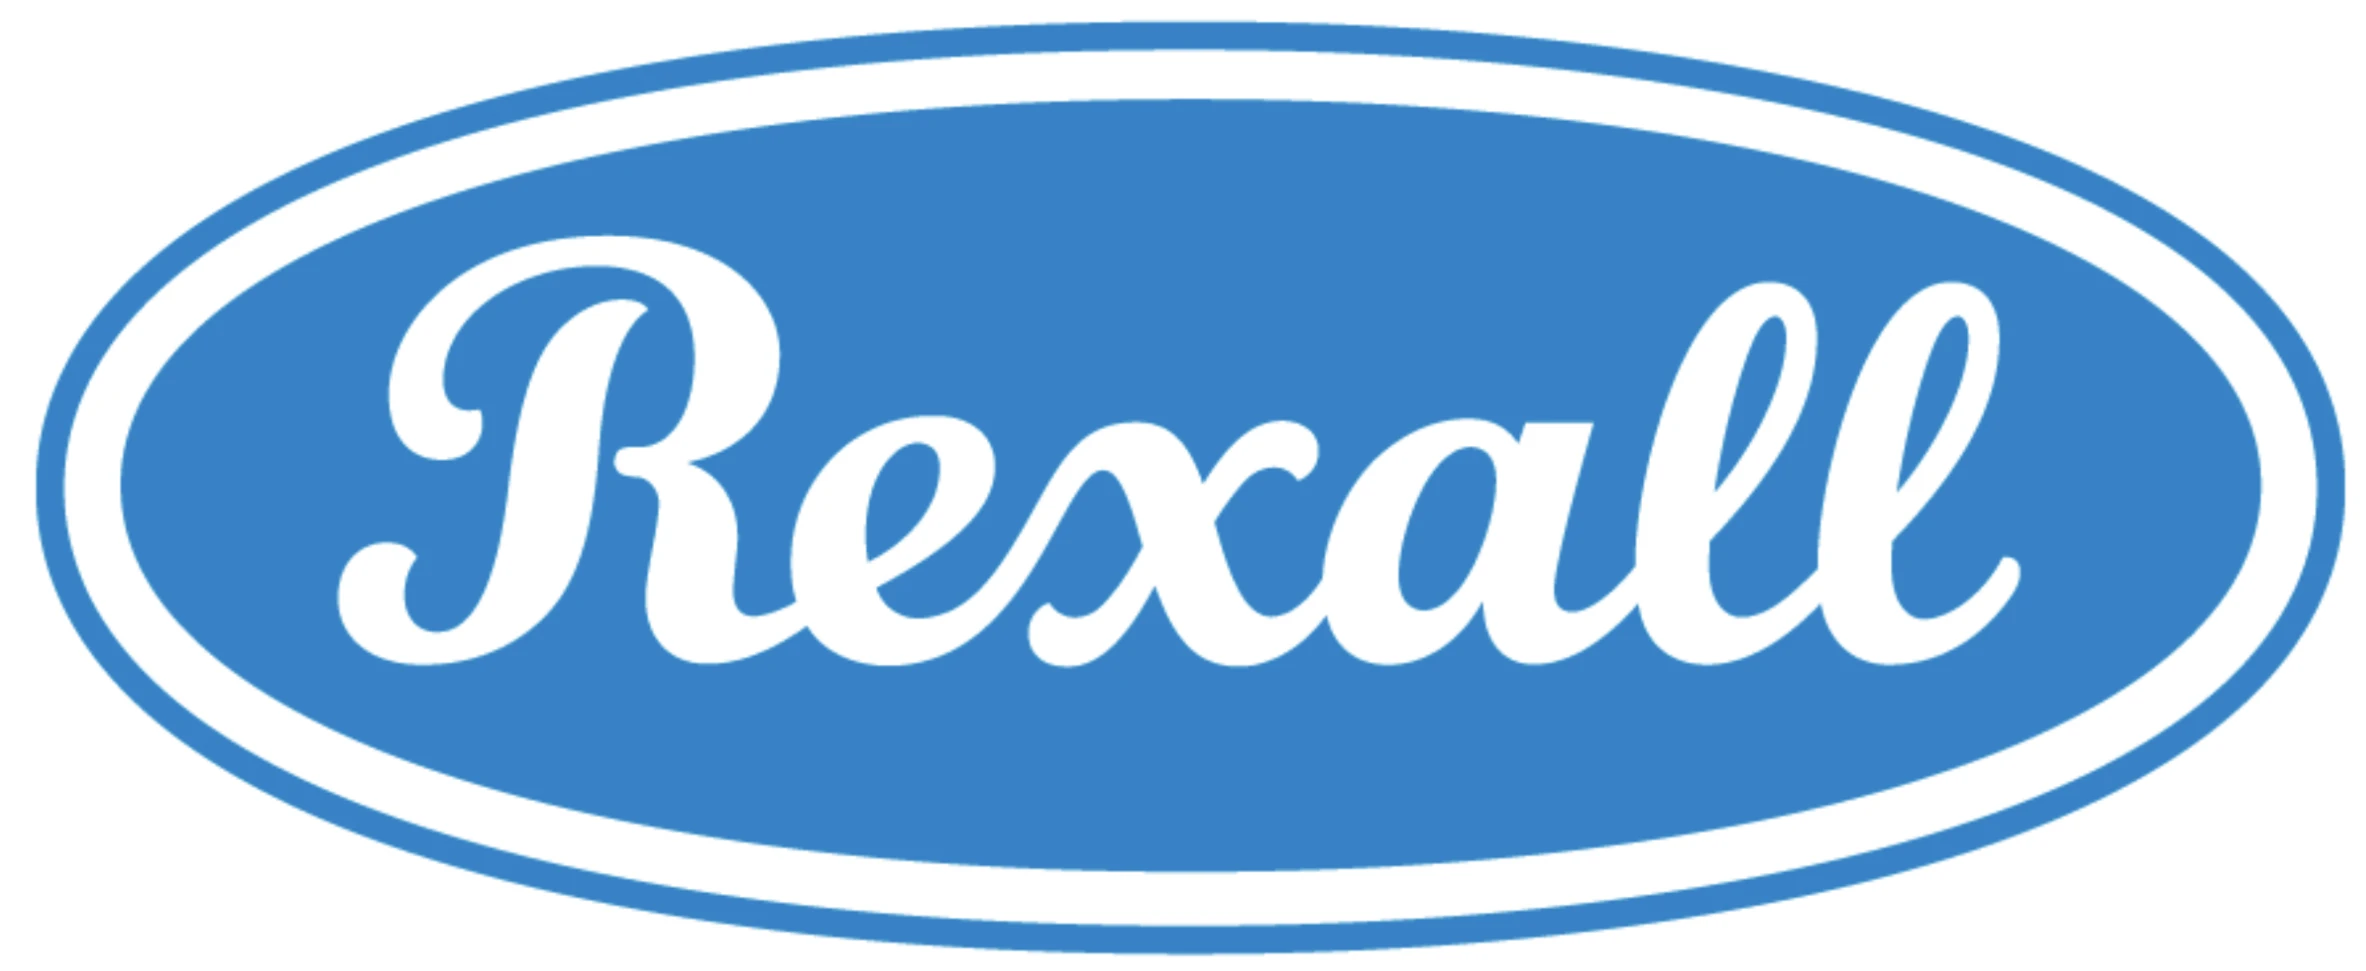 Rexall (Canada) Logo 1996